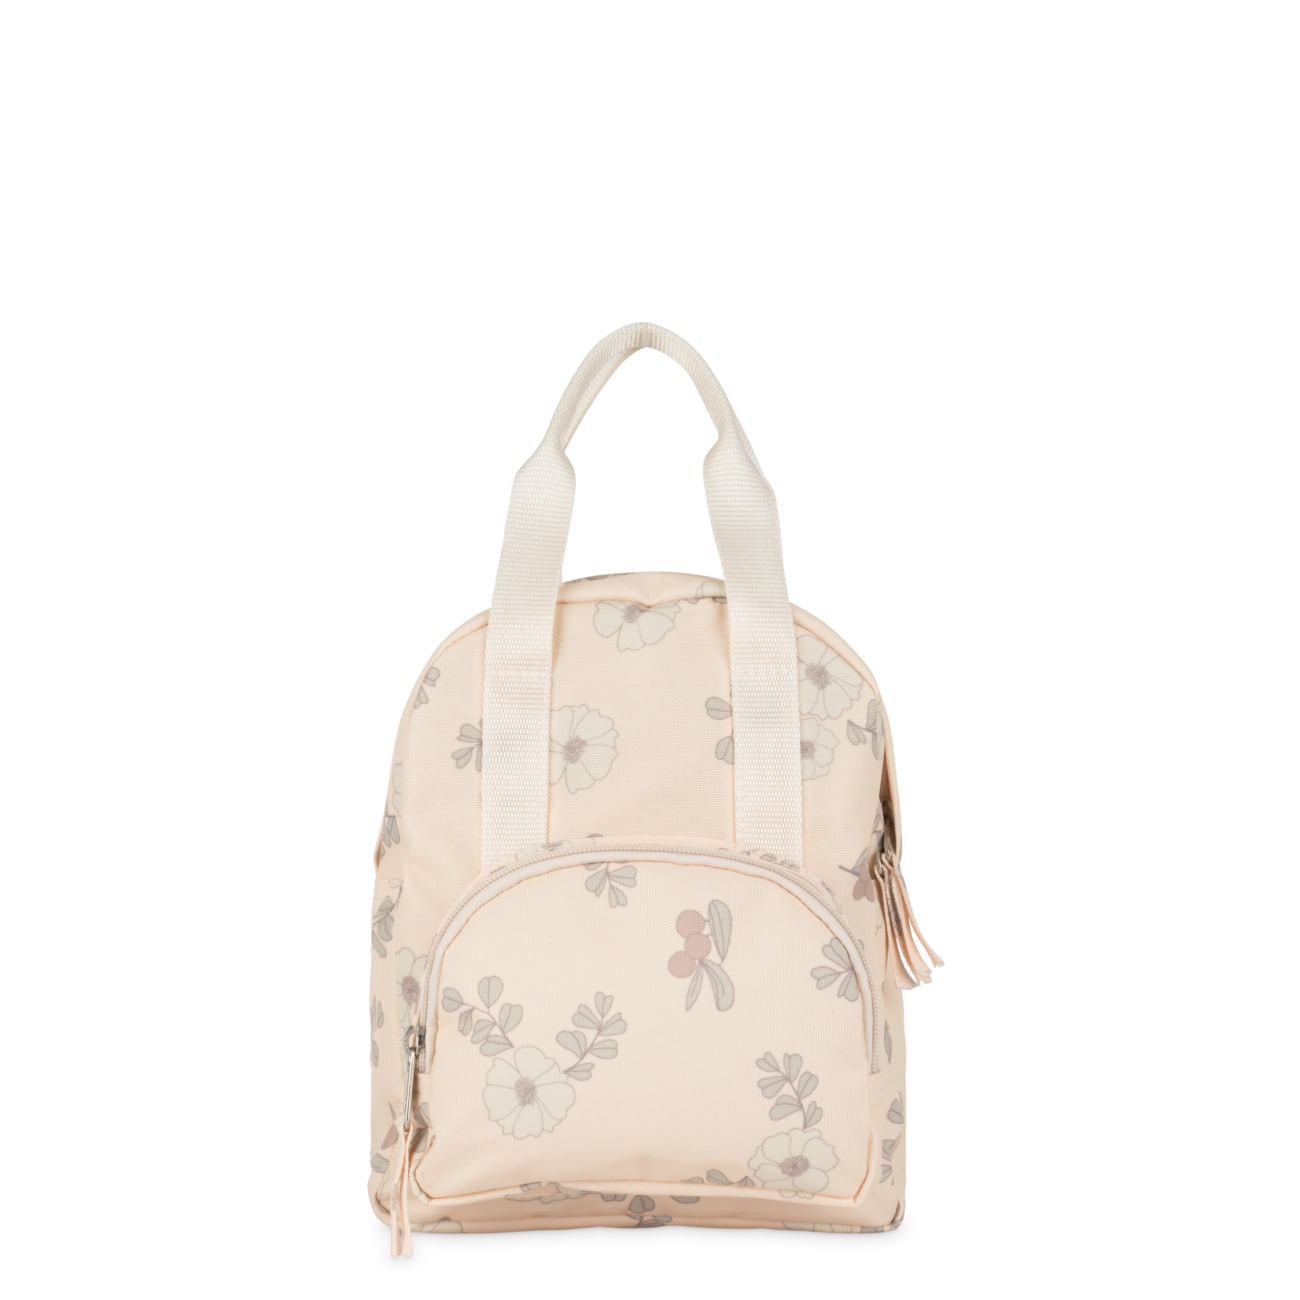 Se Backpack - Flowers and berries hos Thatsmine.dk